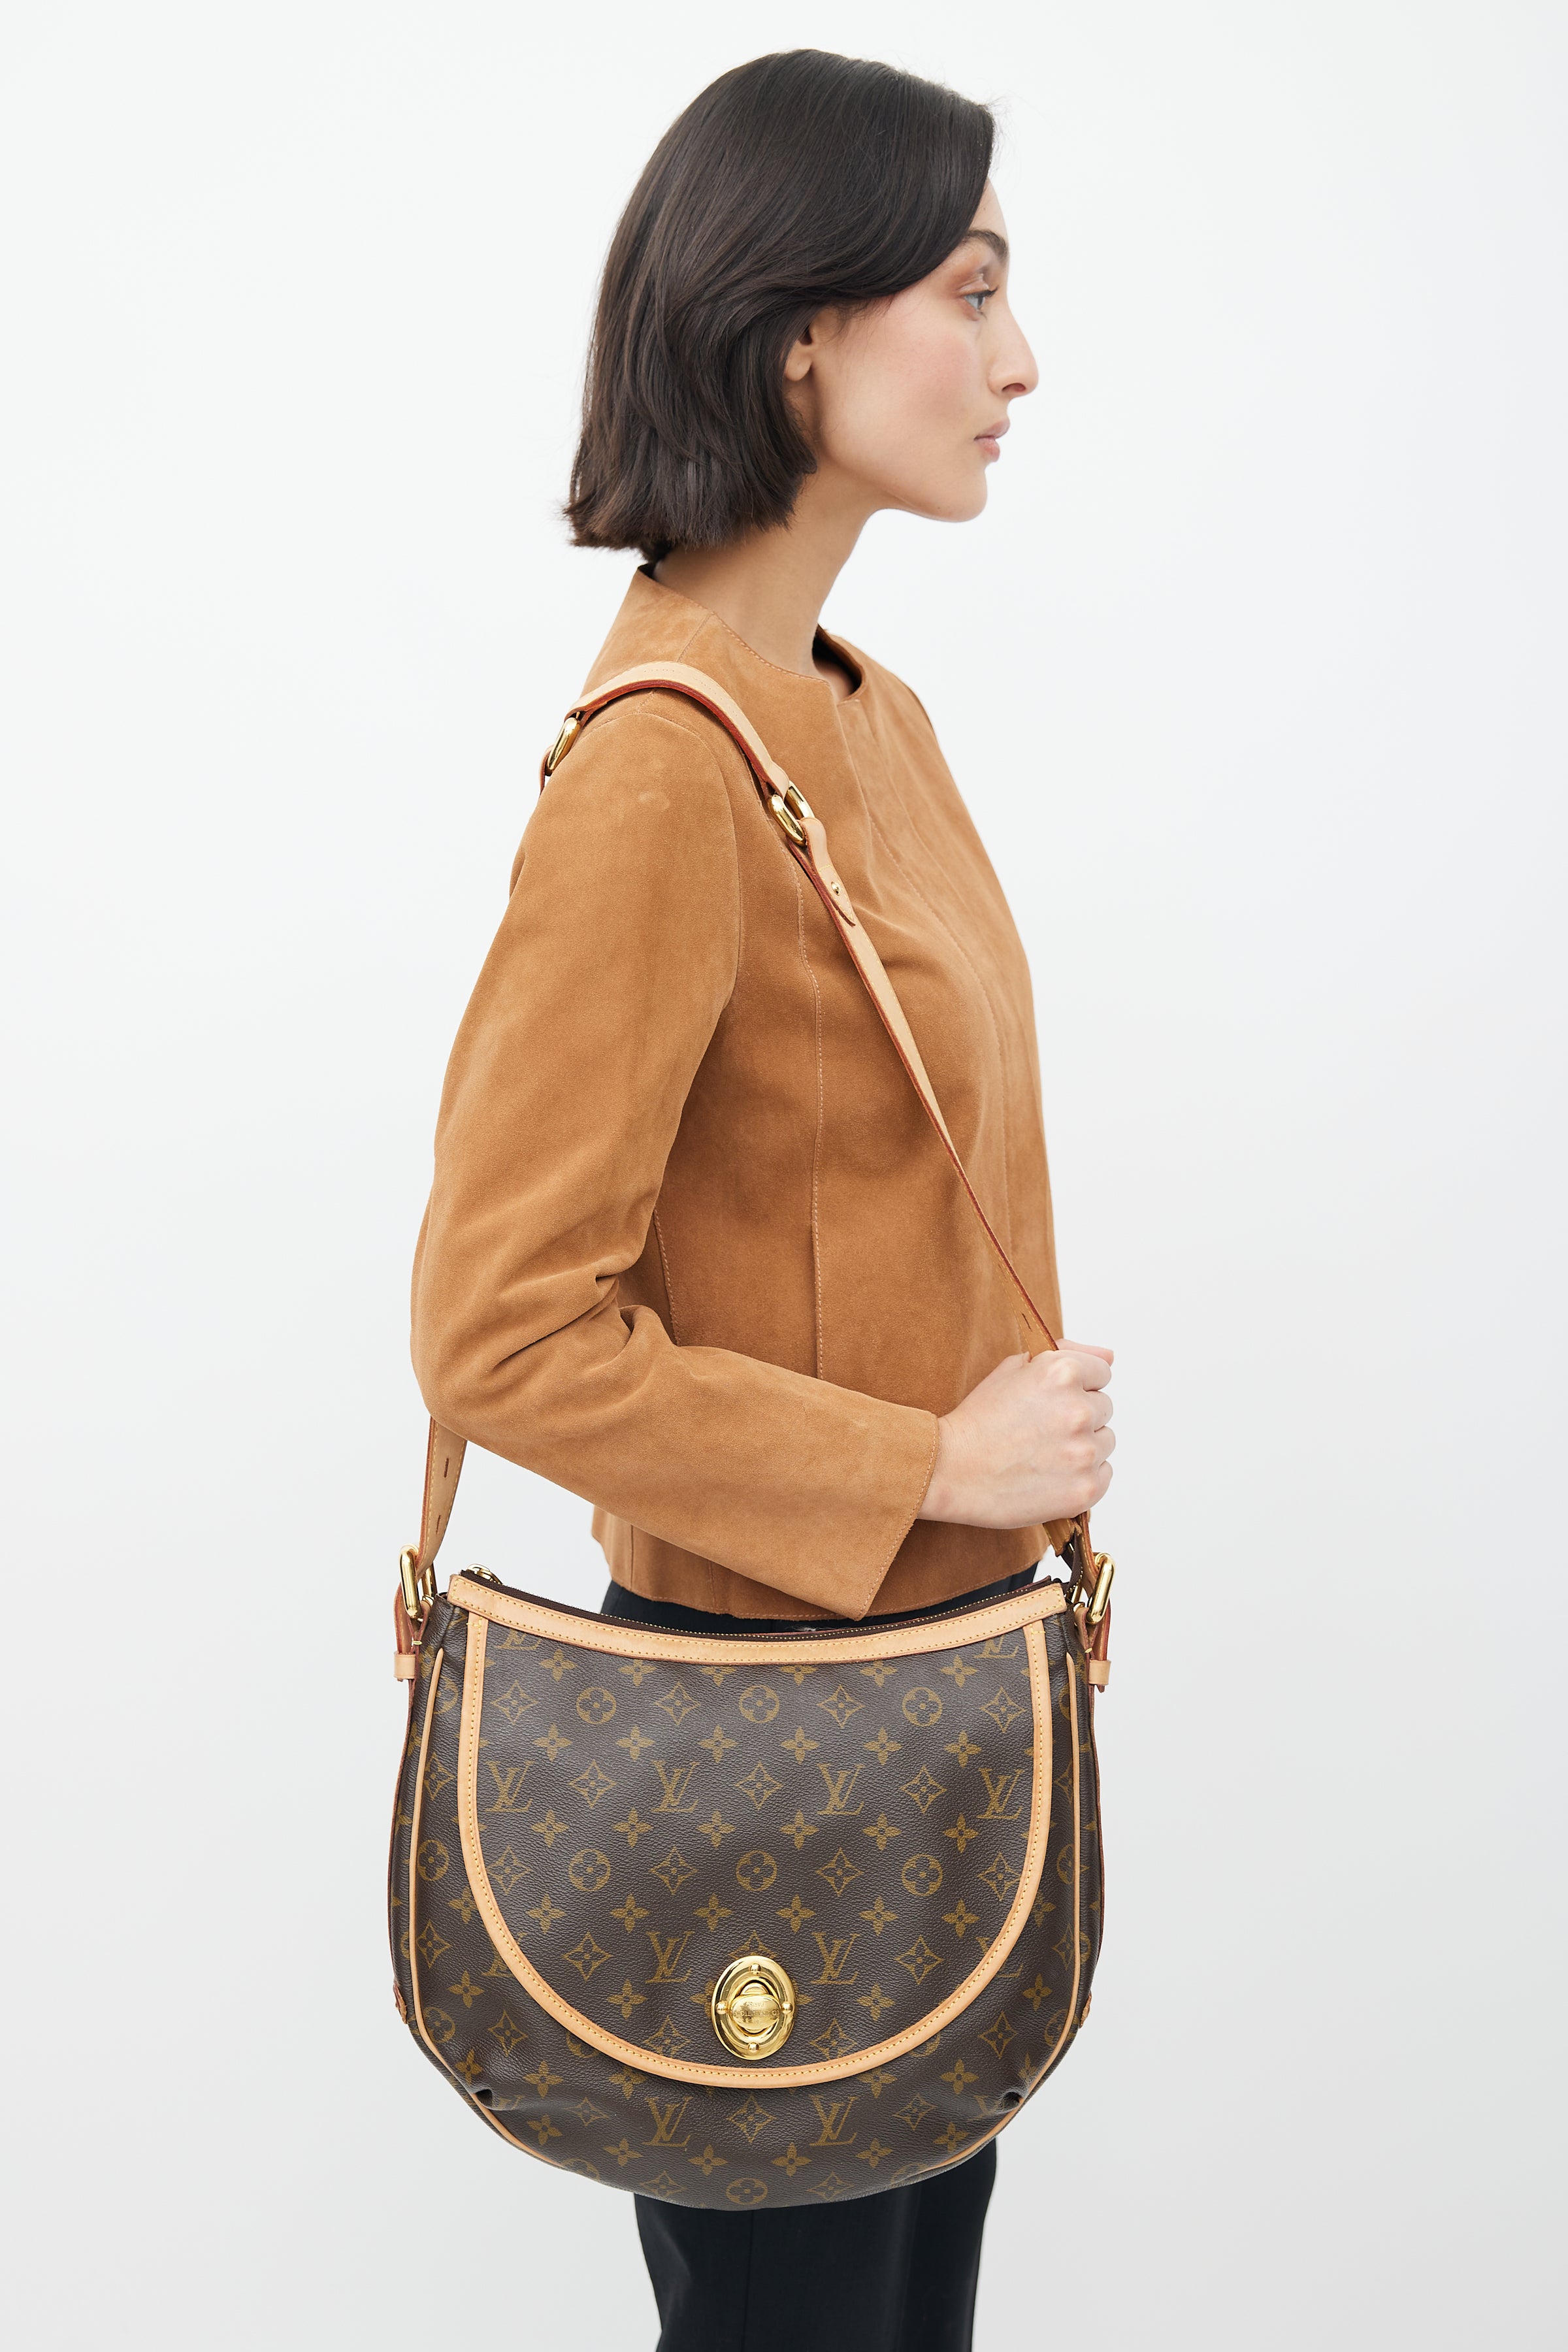 Louis+Vuitton+Tulum+Shoulder+Bag+GM+Brown+Canvas+Monogram for sale online